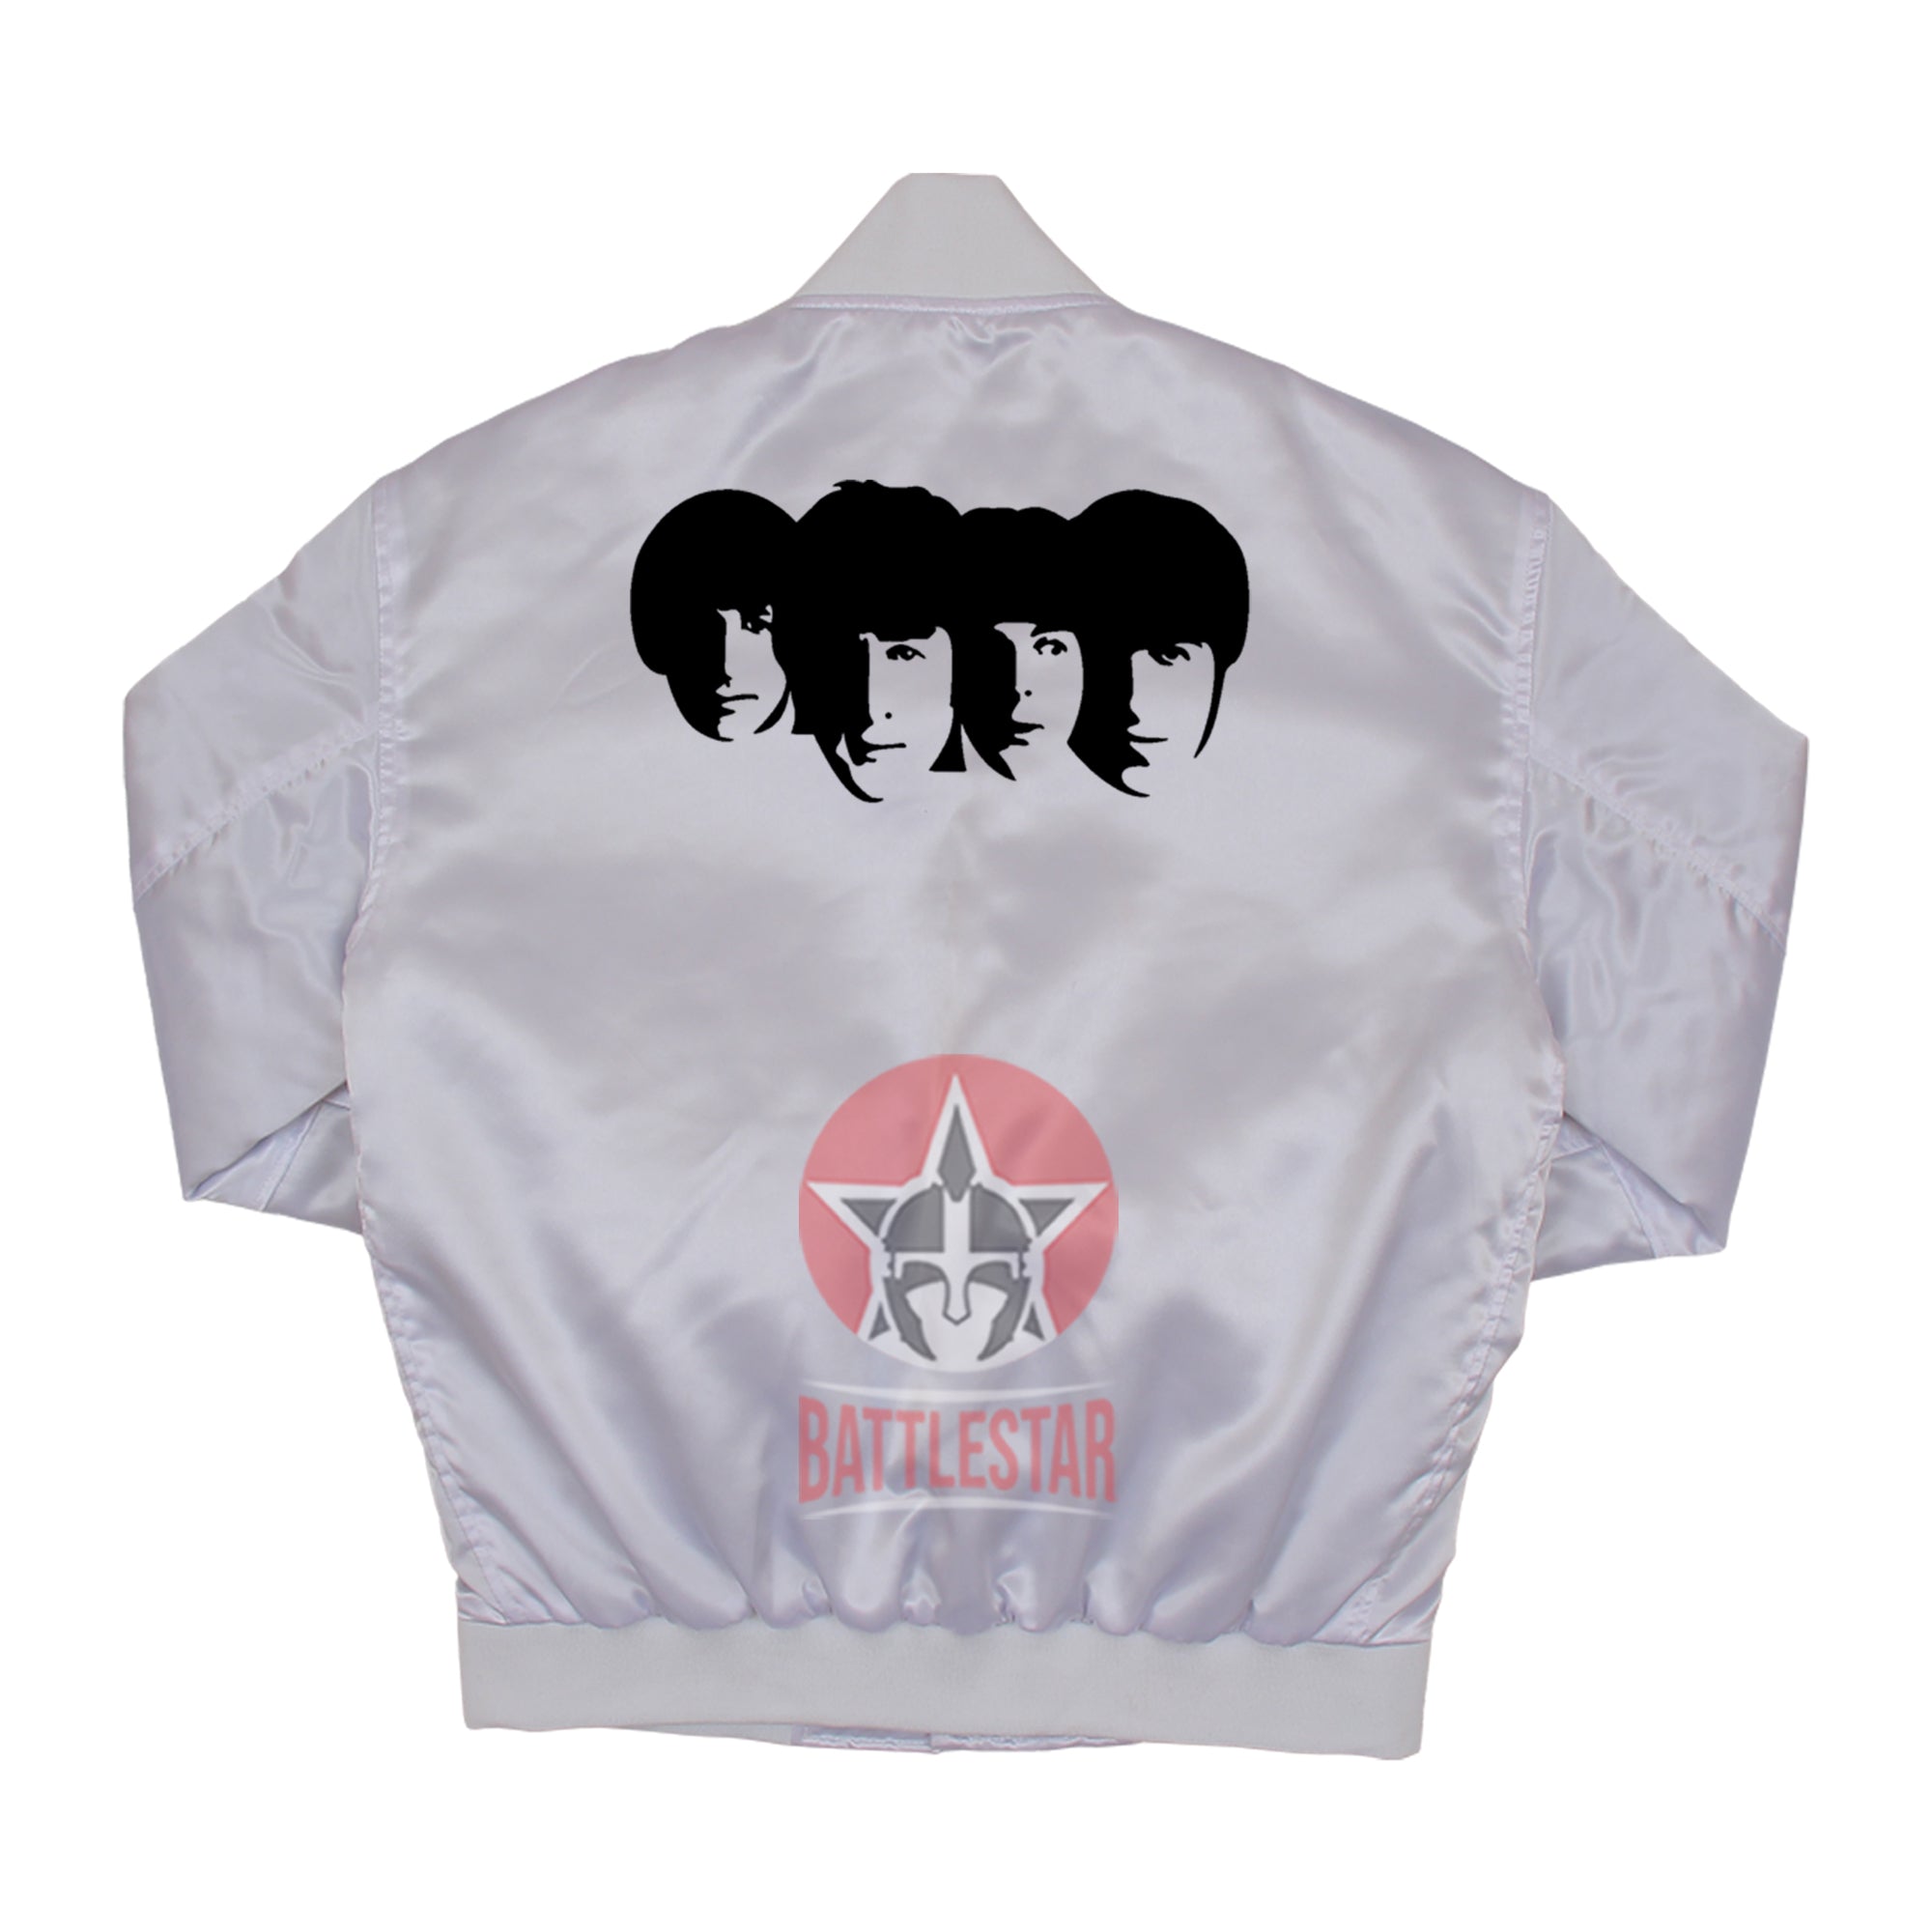 The Beatles Inspired White Satin Varsity Baseball Jacket